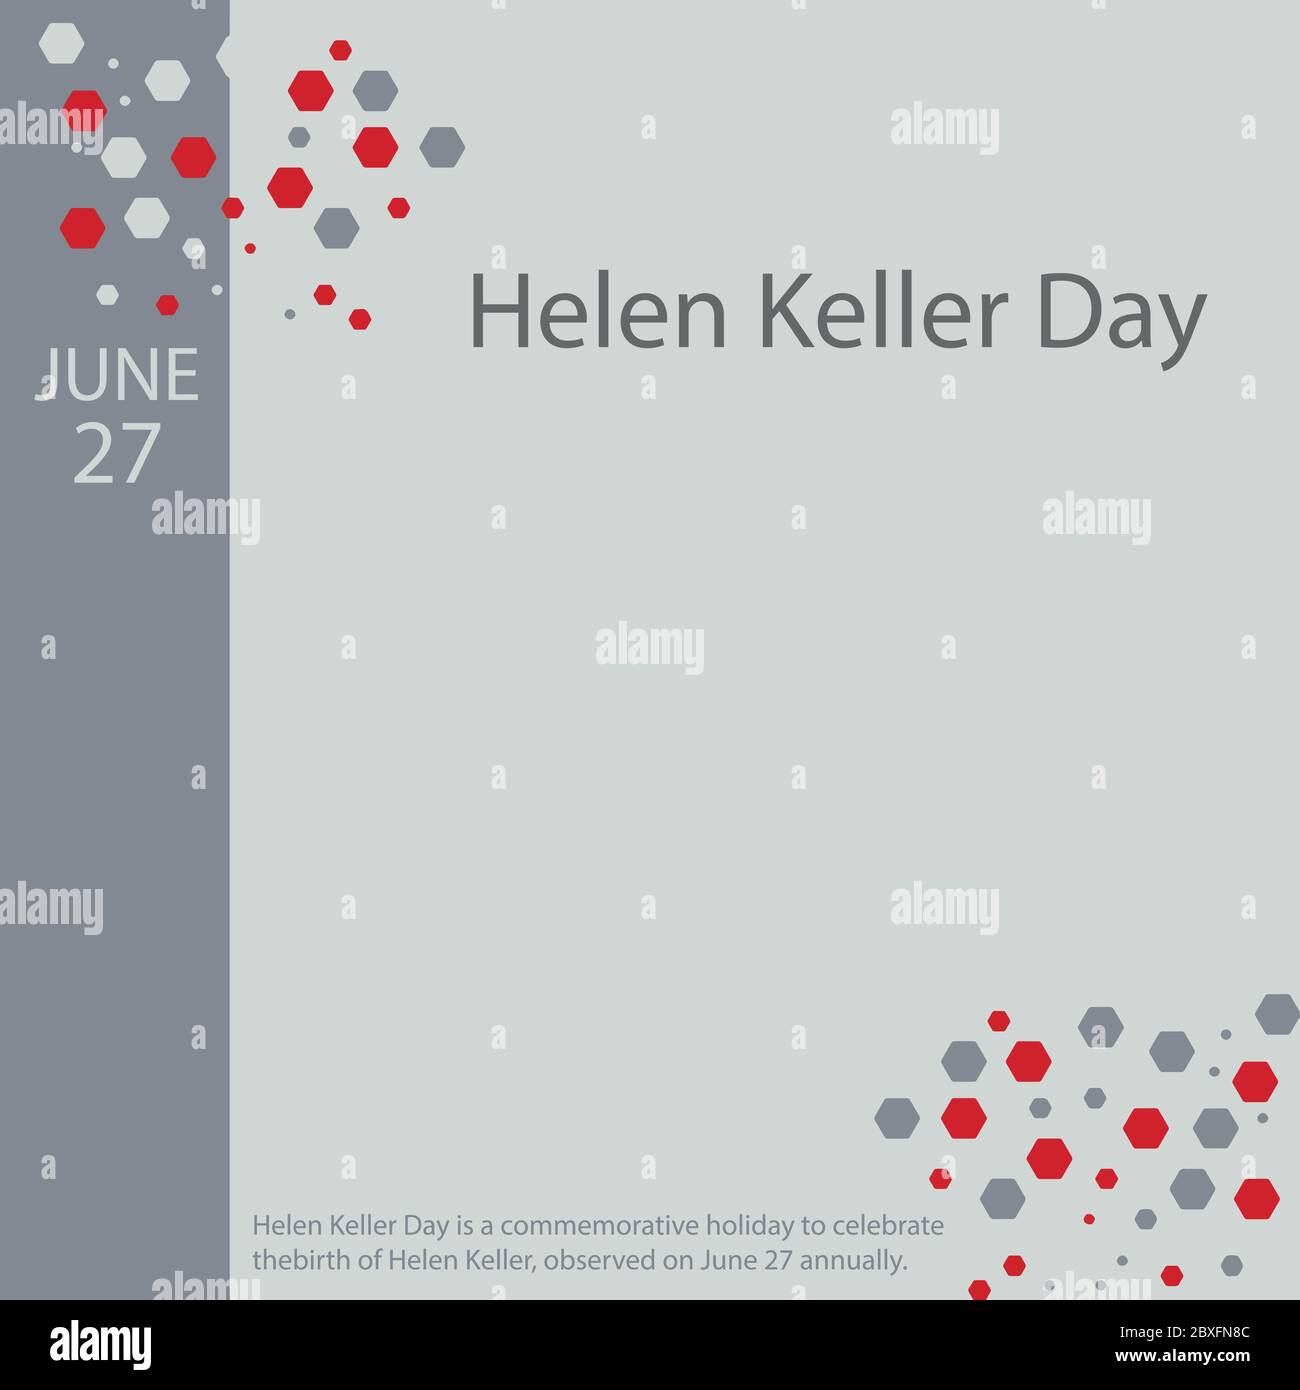 Helen Keller Day ist ein Feiertag zur Feier der Geburt von Helen Keller, die am 27. Juni jährlich begangen wird. Stock Vektor